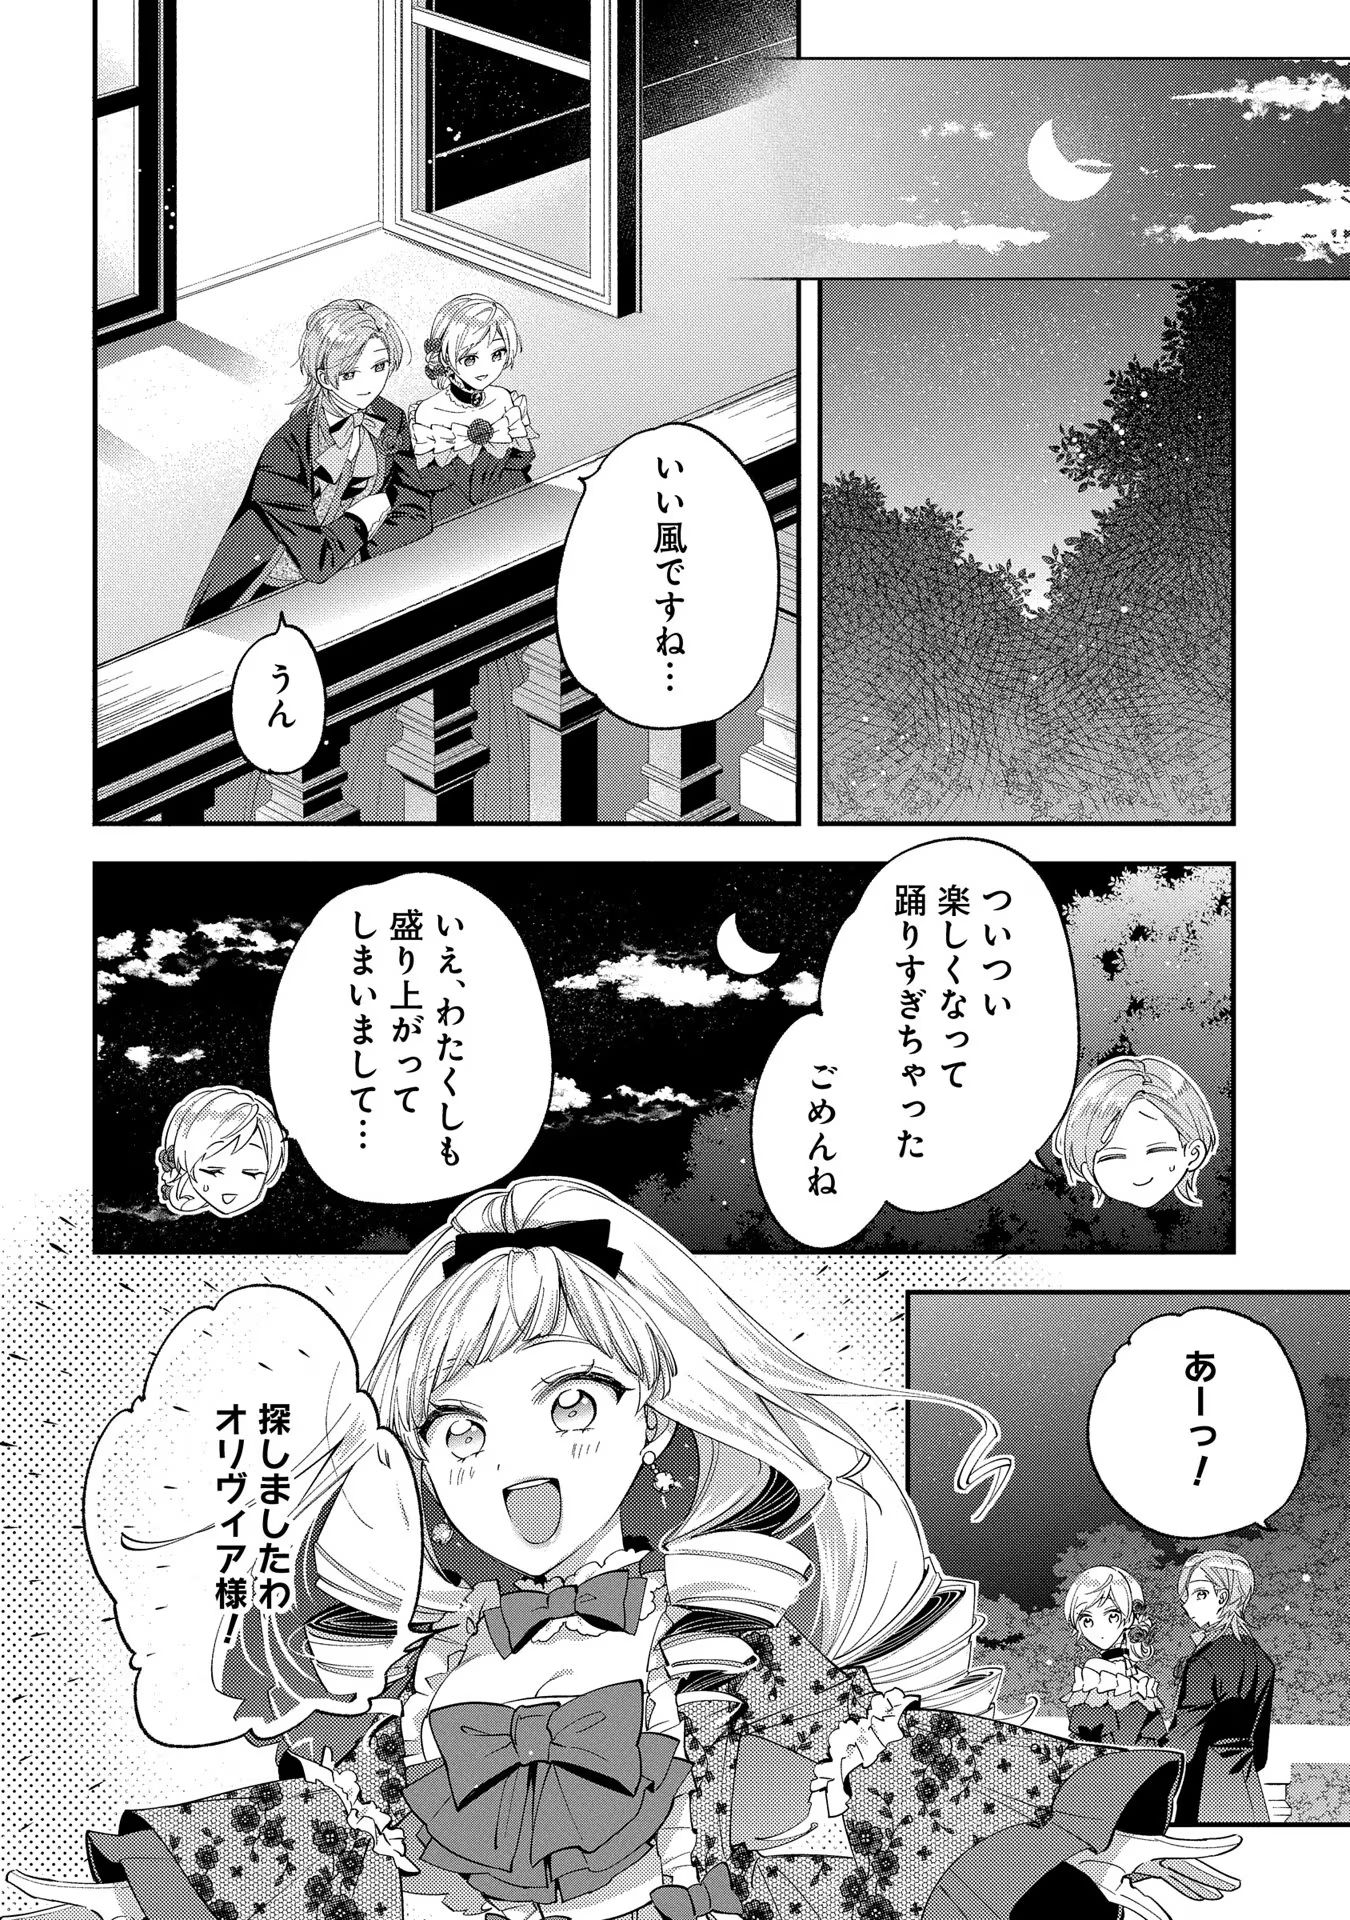 Outaishi ni Konyaku Hakisareta no de, Mou Baka no Furi wa Yameyou to Omoimasu - Chapter 11 - Page 16